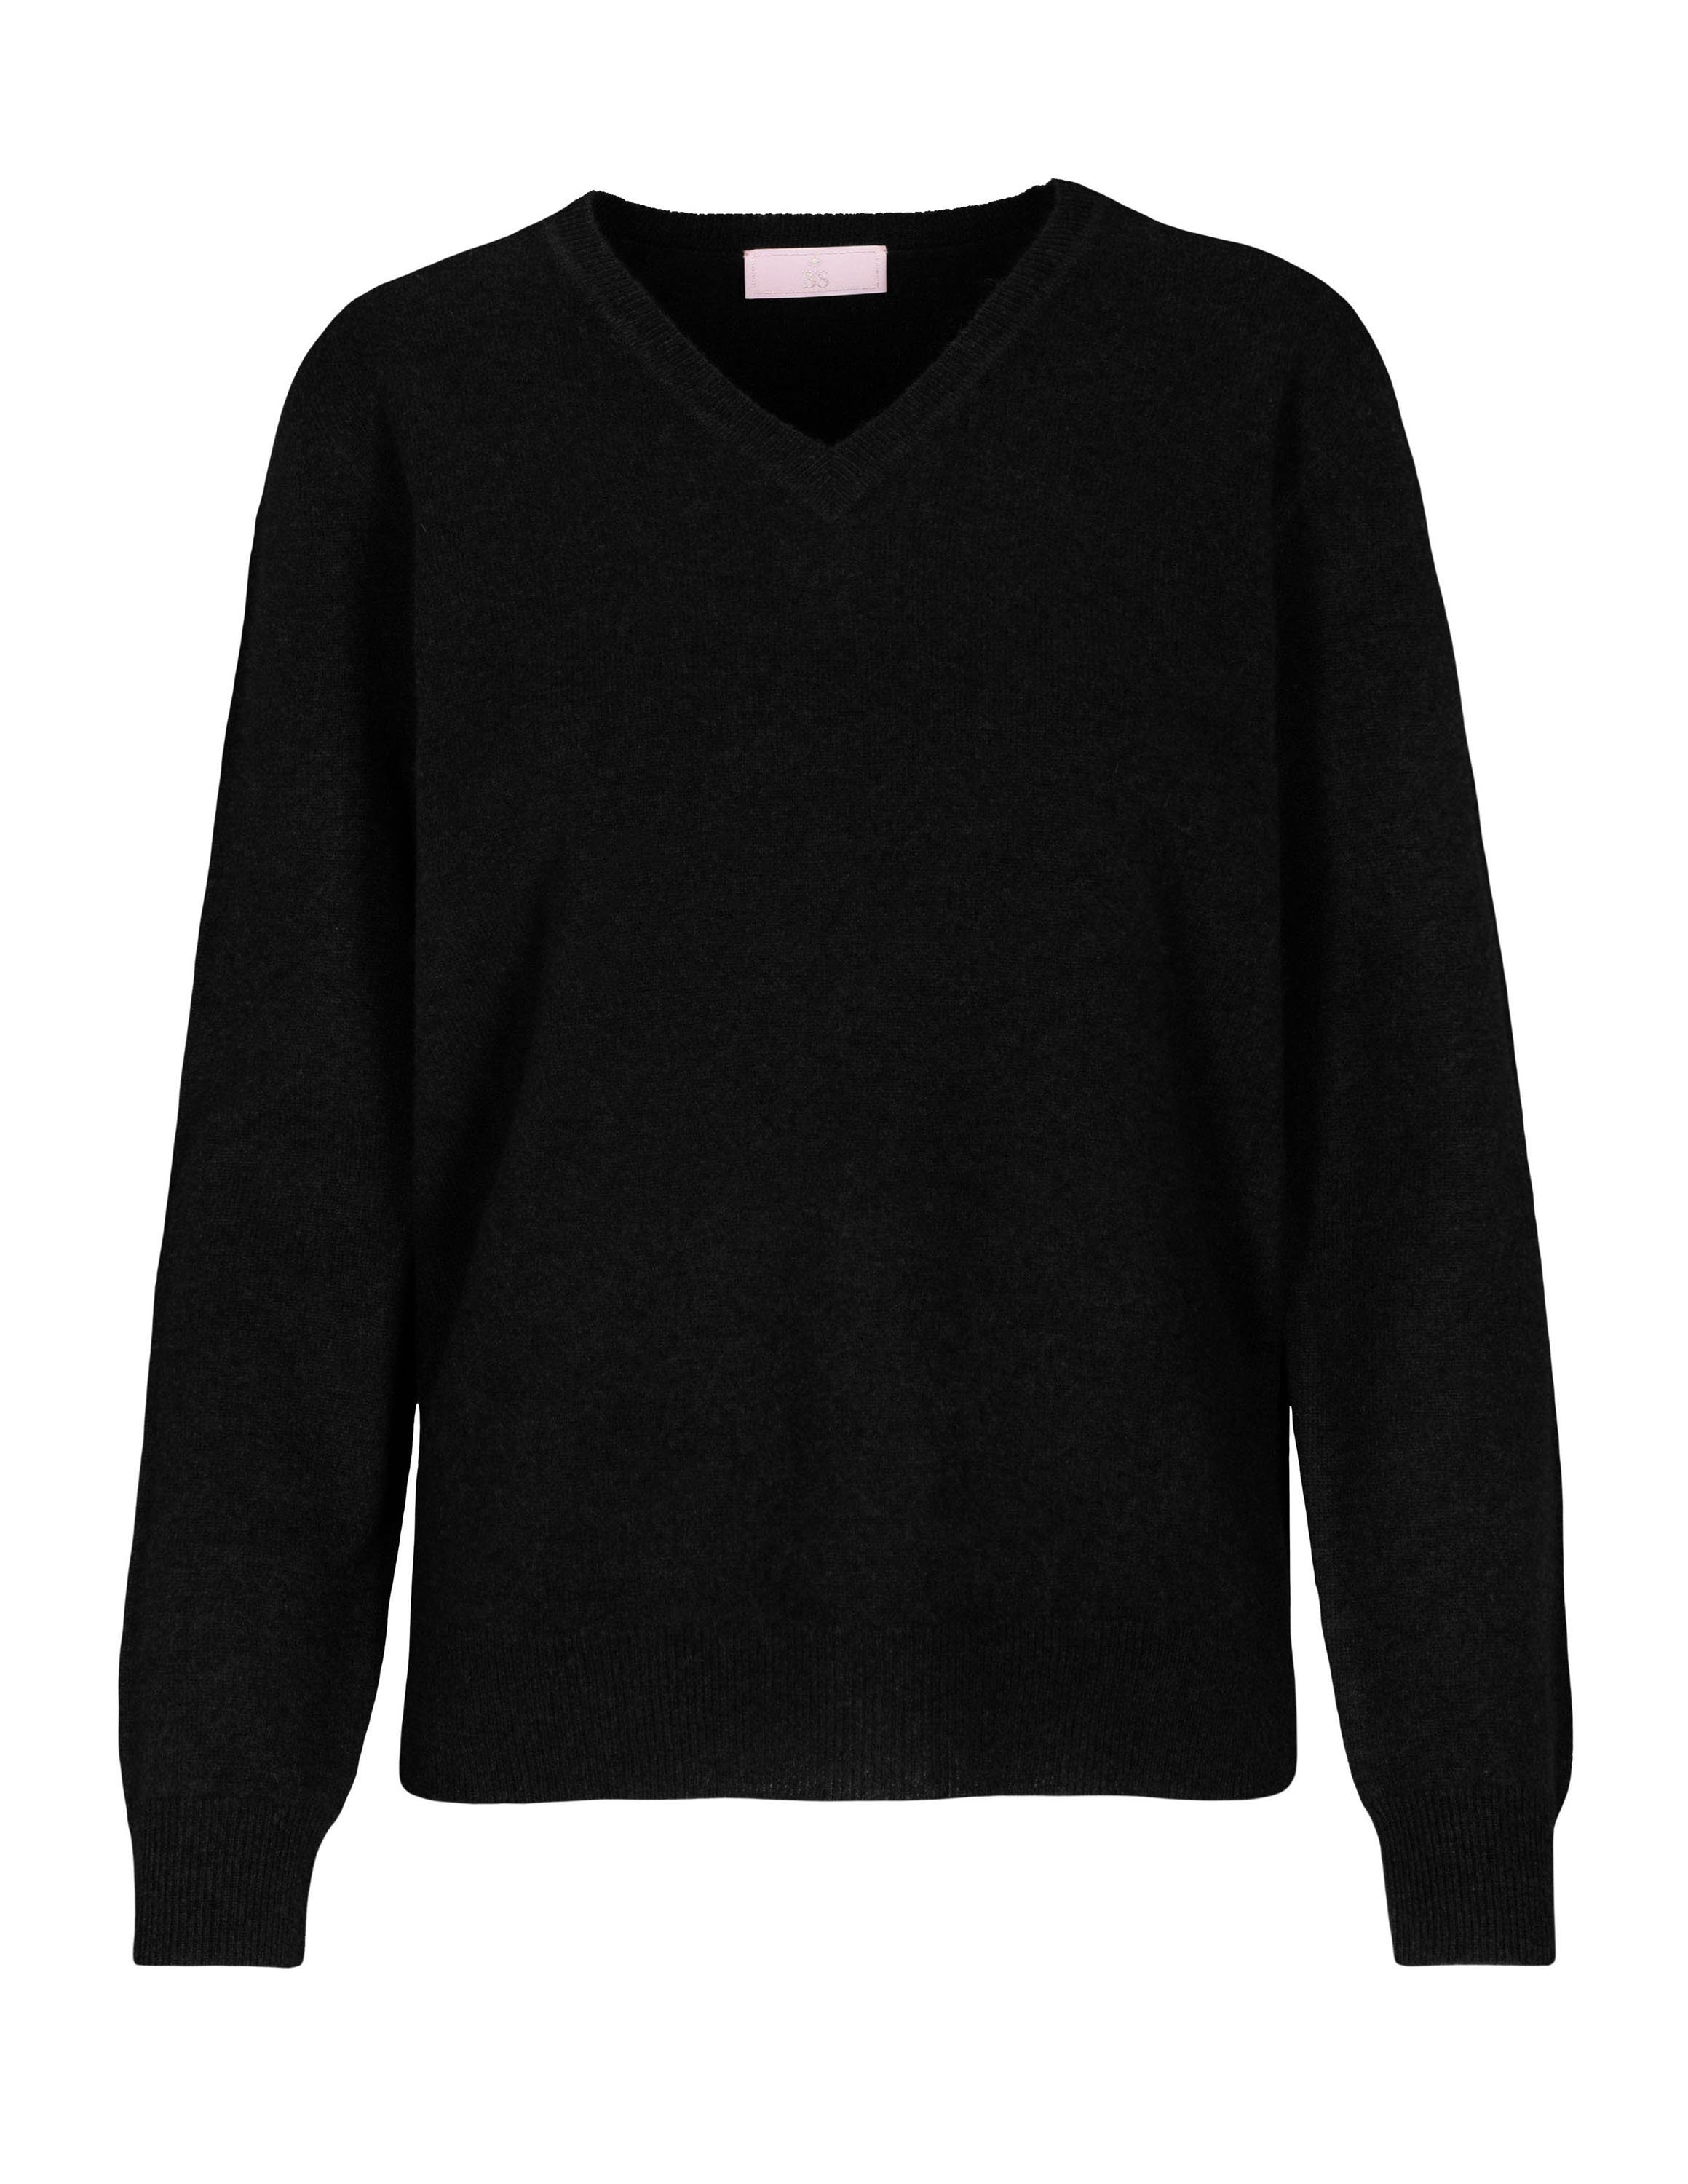 IN LINEA V-Ausschnitt-Pullover Pullover mit V-Ausschnitt 900 black